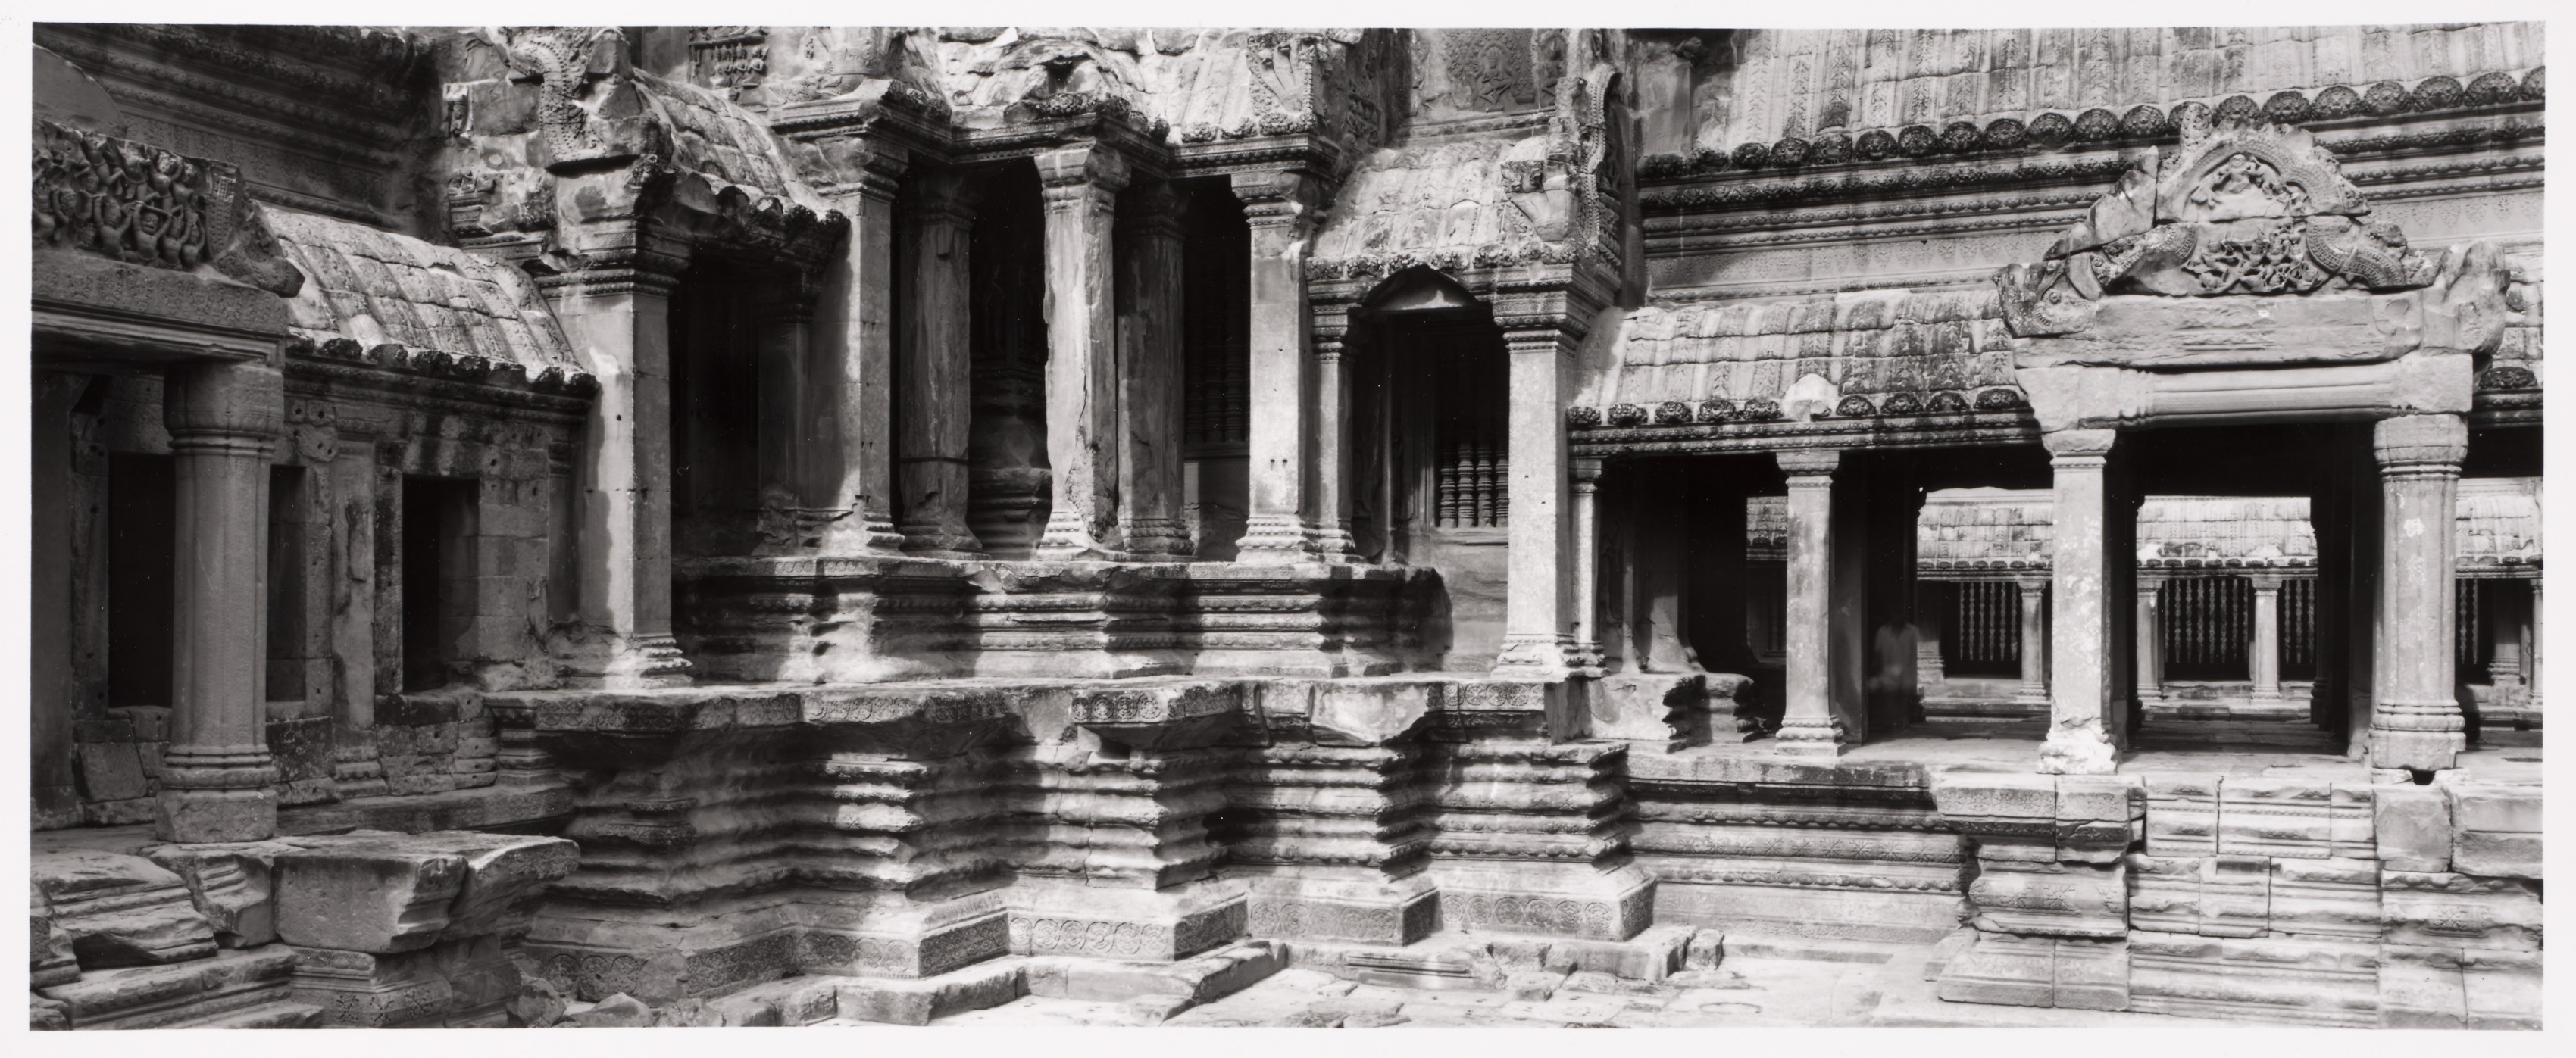 Angkor Wat, Cambodia: Vision of the God-Kings